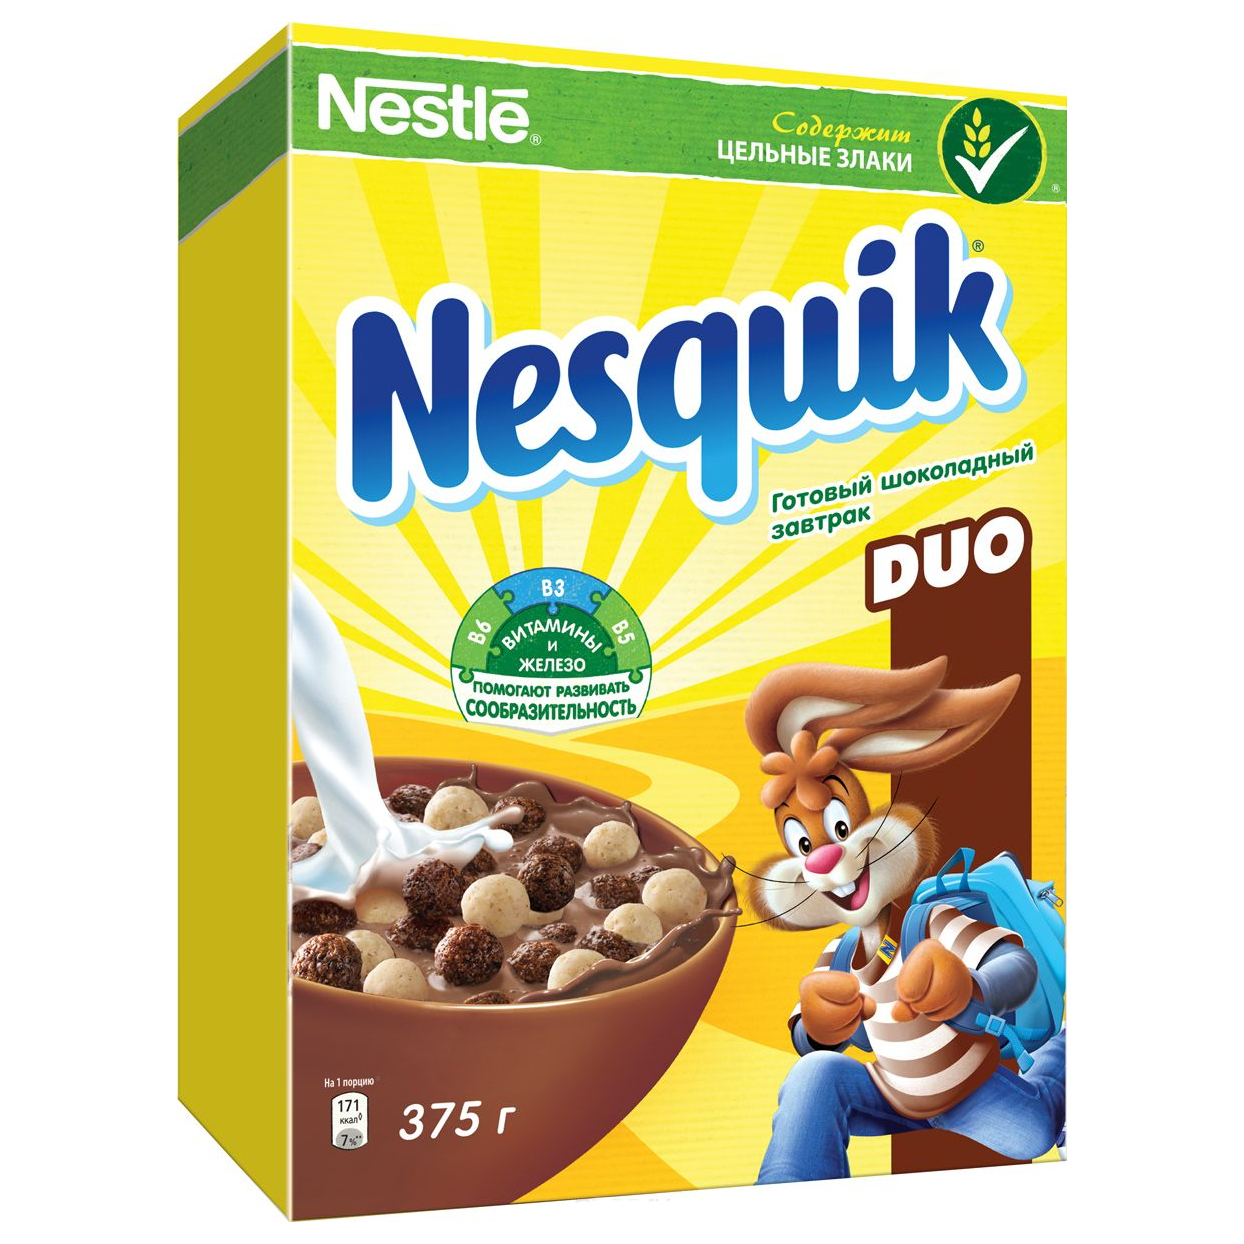 Nestle Nesquik Шоколадные шарики DUO готовый завтрак в коробочке 375 г